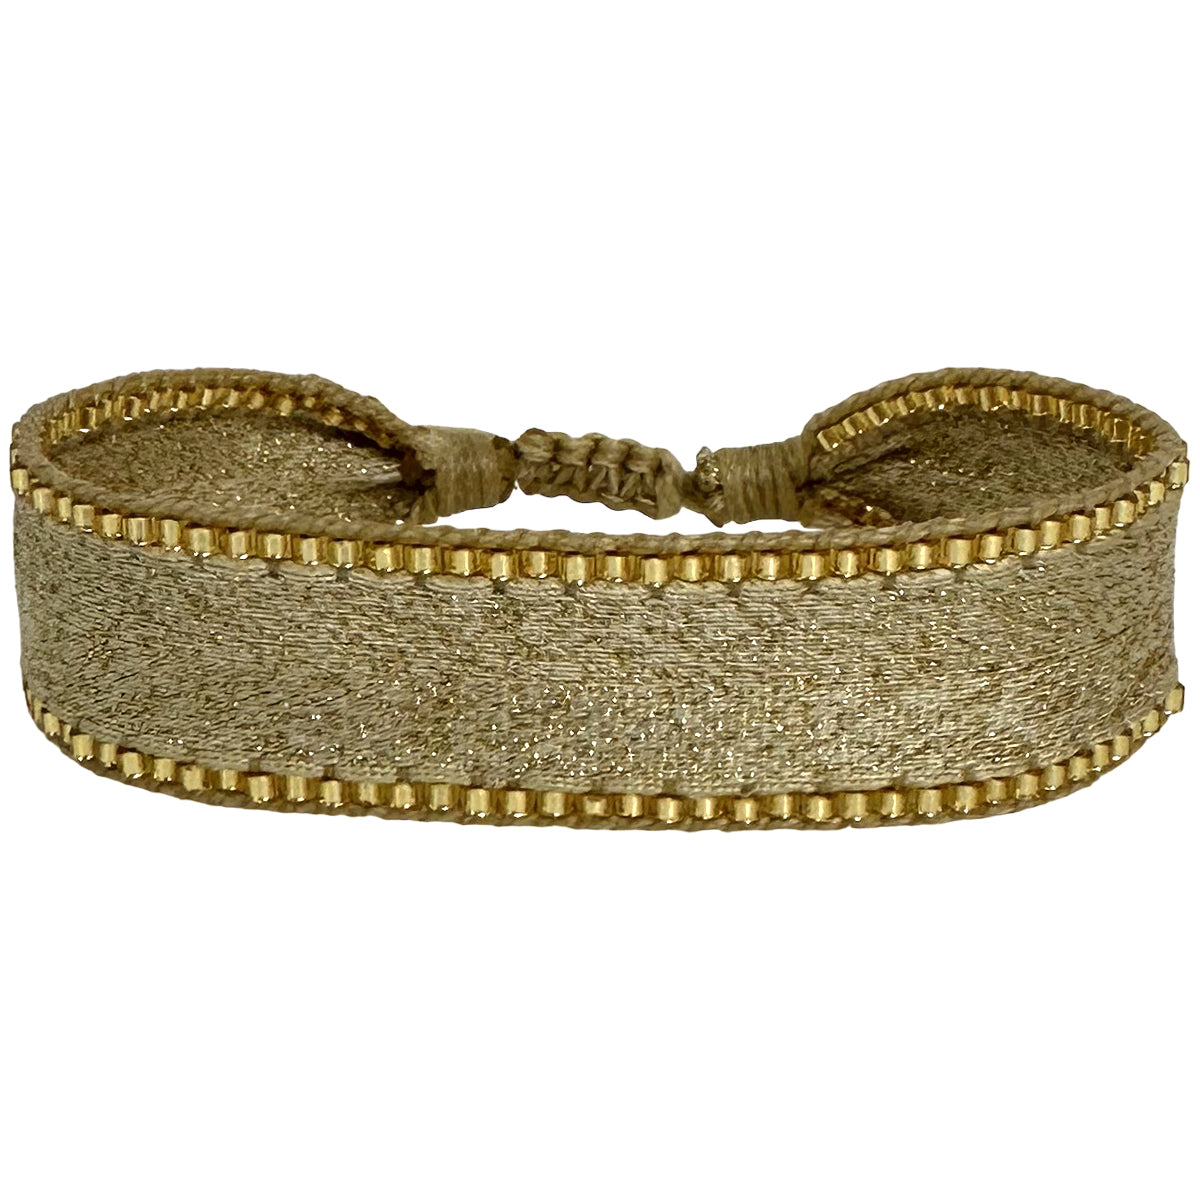 Kenia Handmade Bracelet In Golden